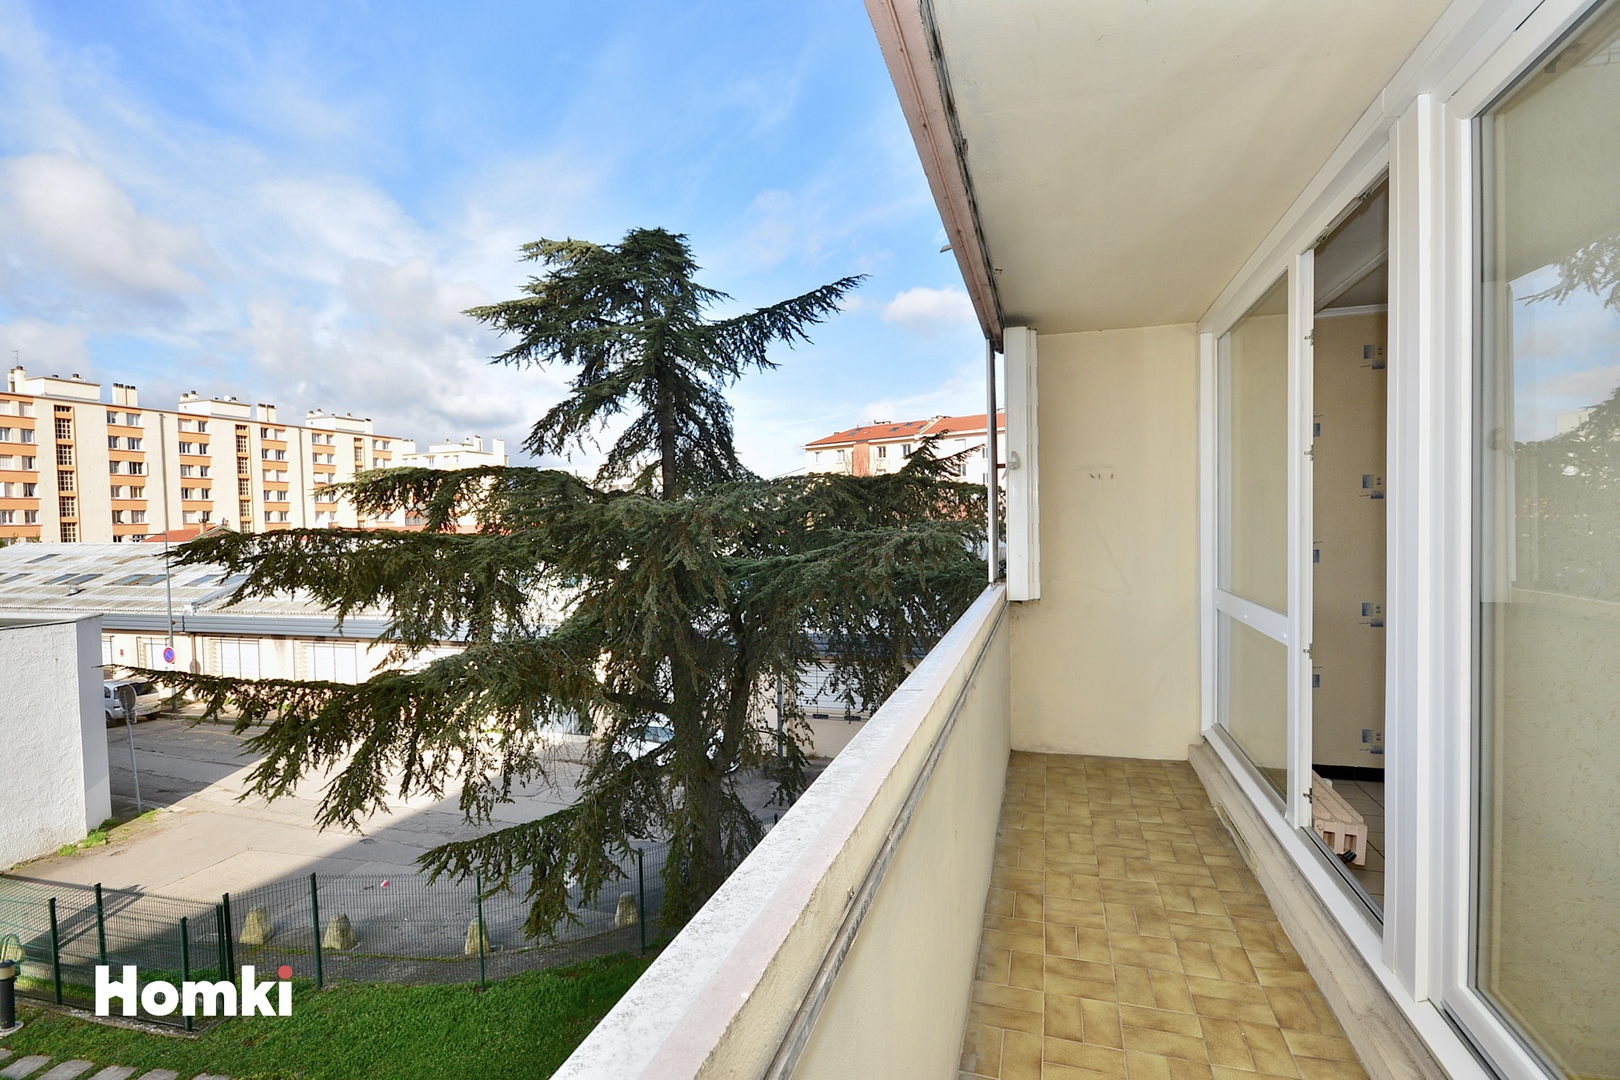 Homki - Vente Appartement  de 78.0 m² à Villeurbanne 69100